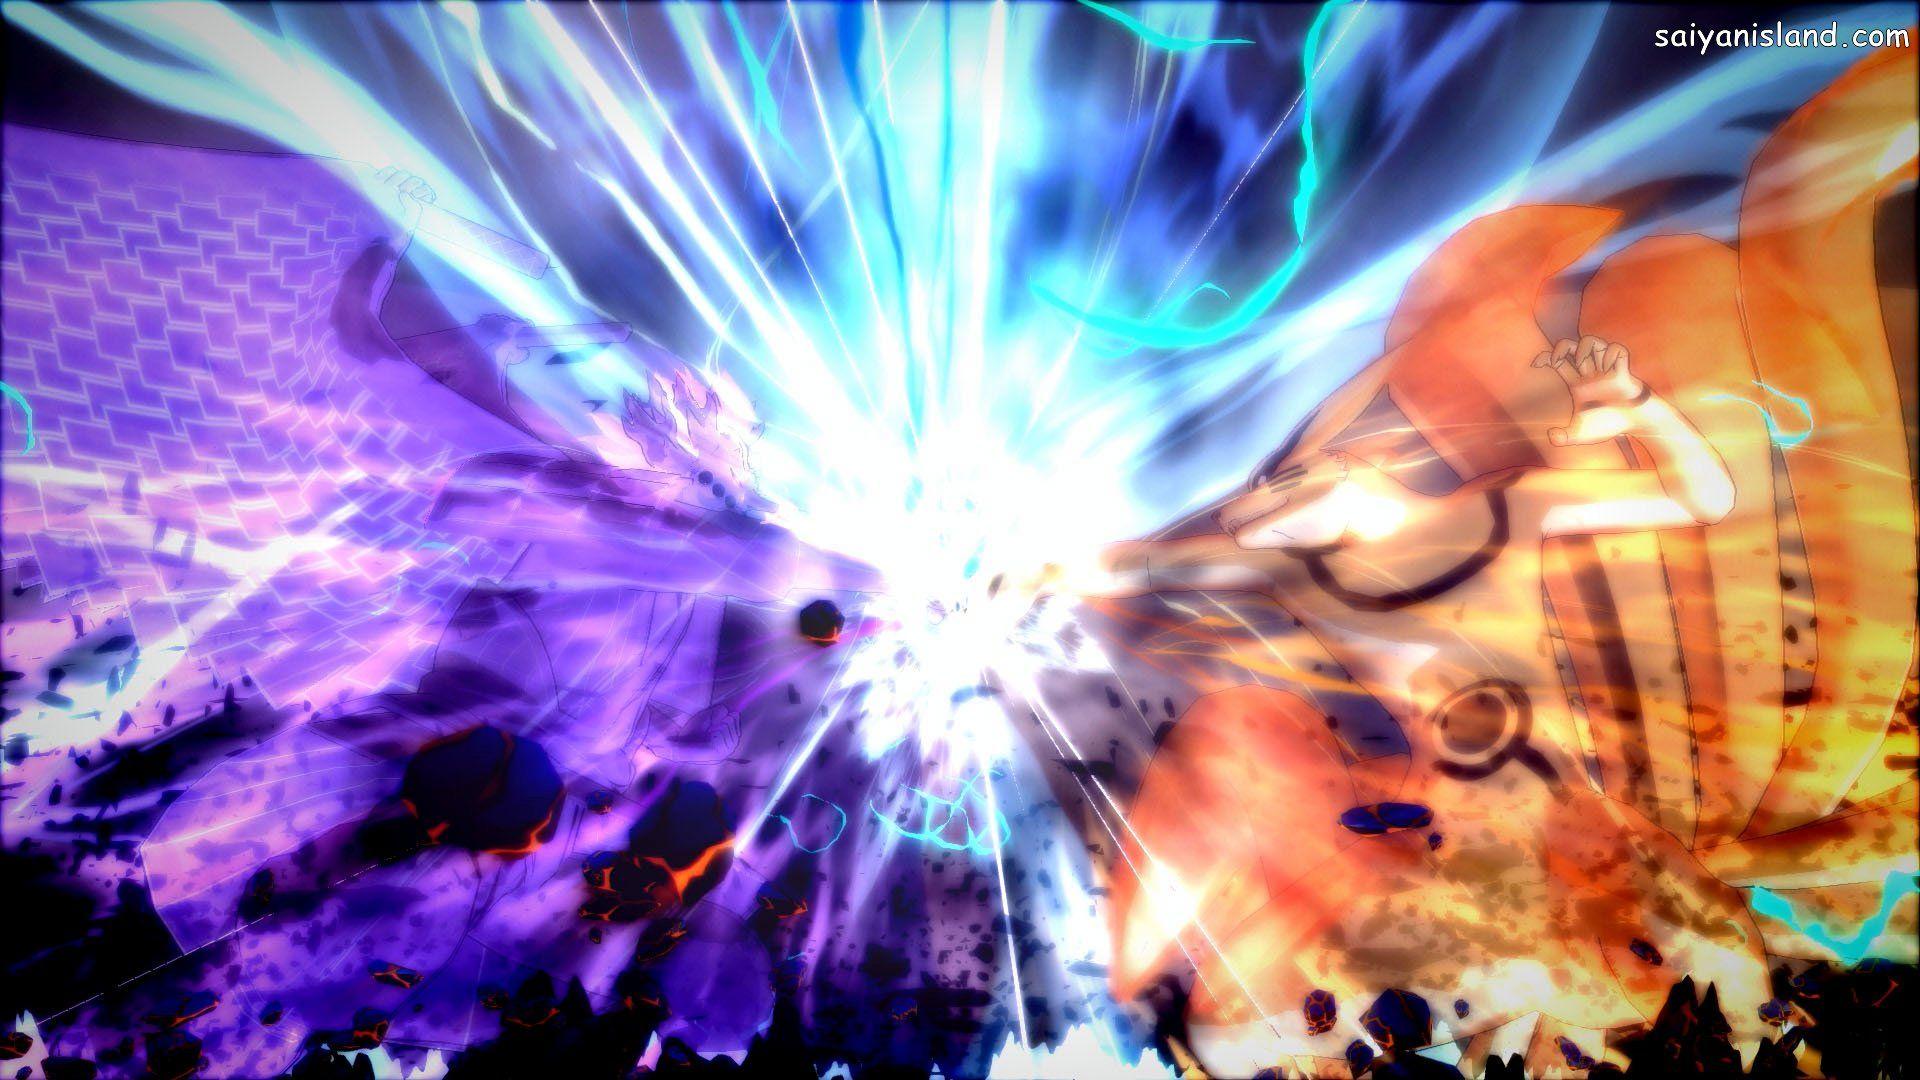 Naruto Storm 4: 20 New Screenshots, Naruto vs Sasuke